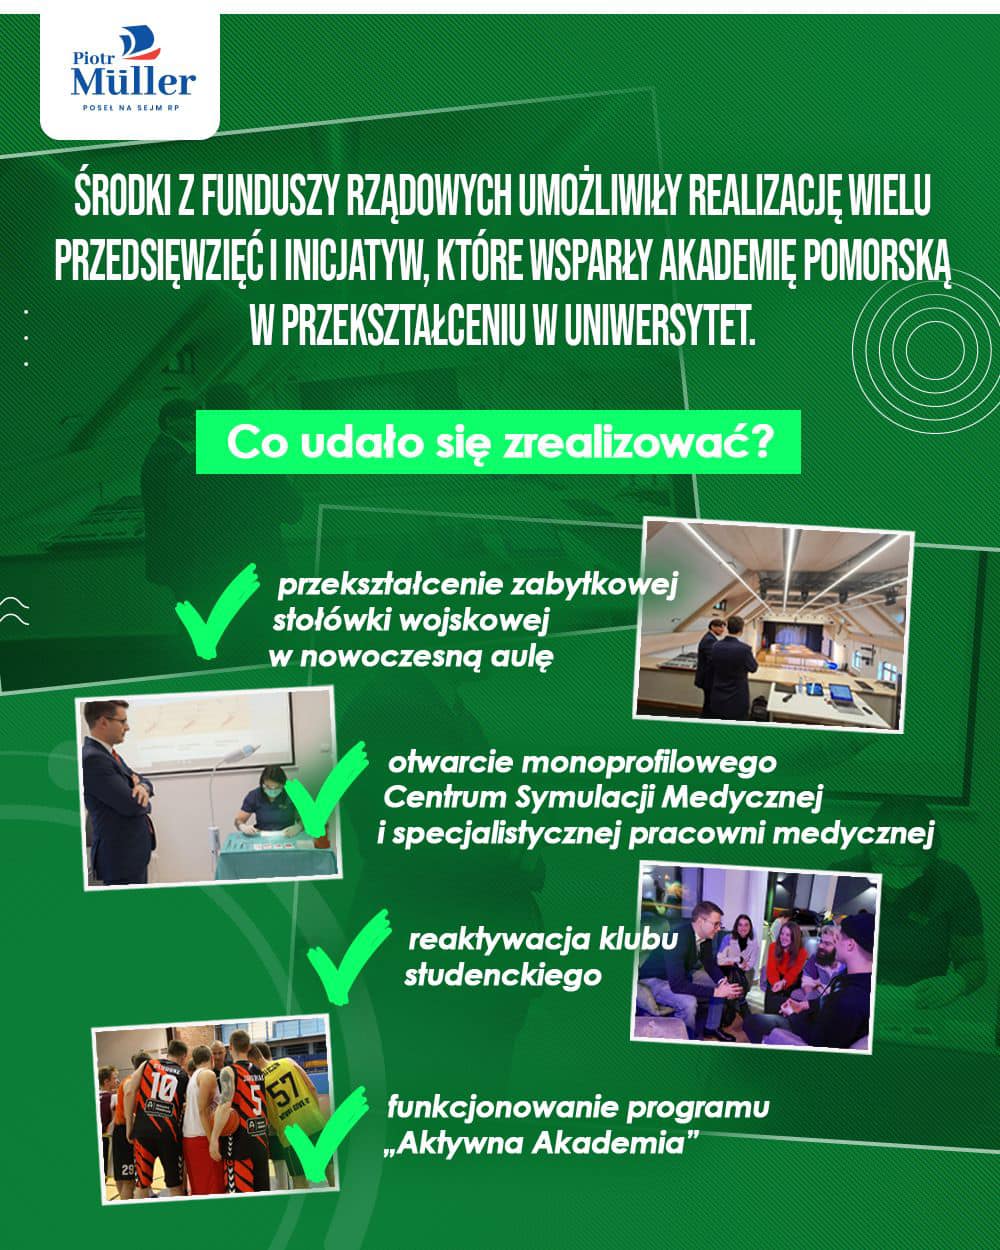 Rekordowe wsparcie finansowe rządu dla Uniwersytetu Pomorskiego w Słupsku przyniosło efekty